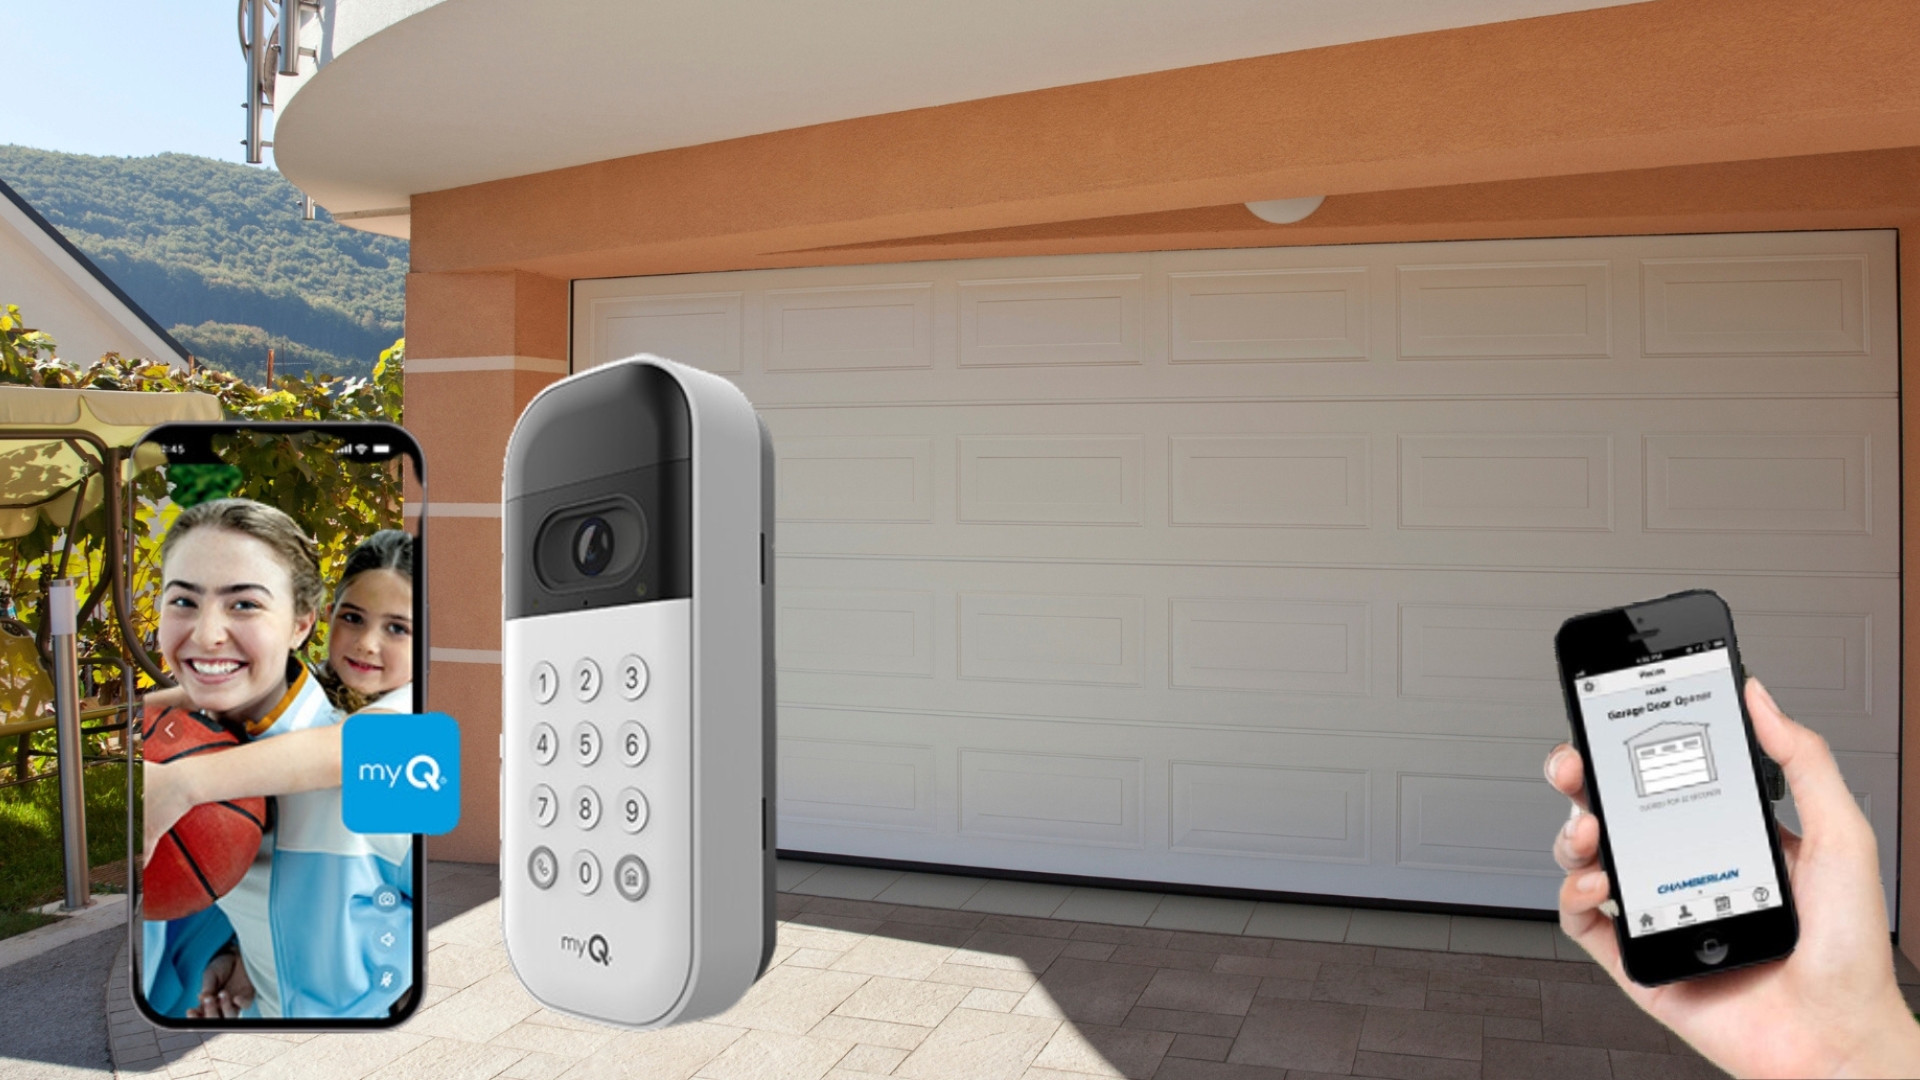 A garage door app to open a keyless garage door